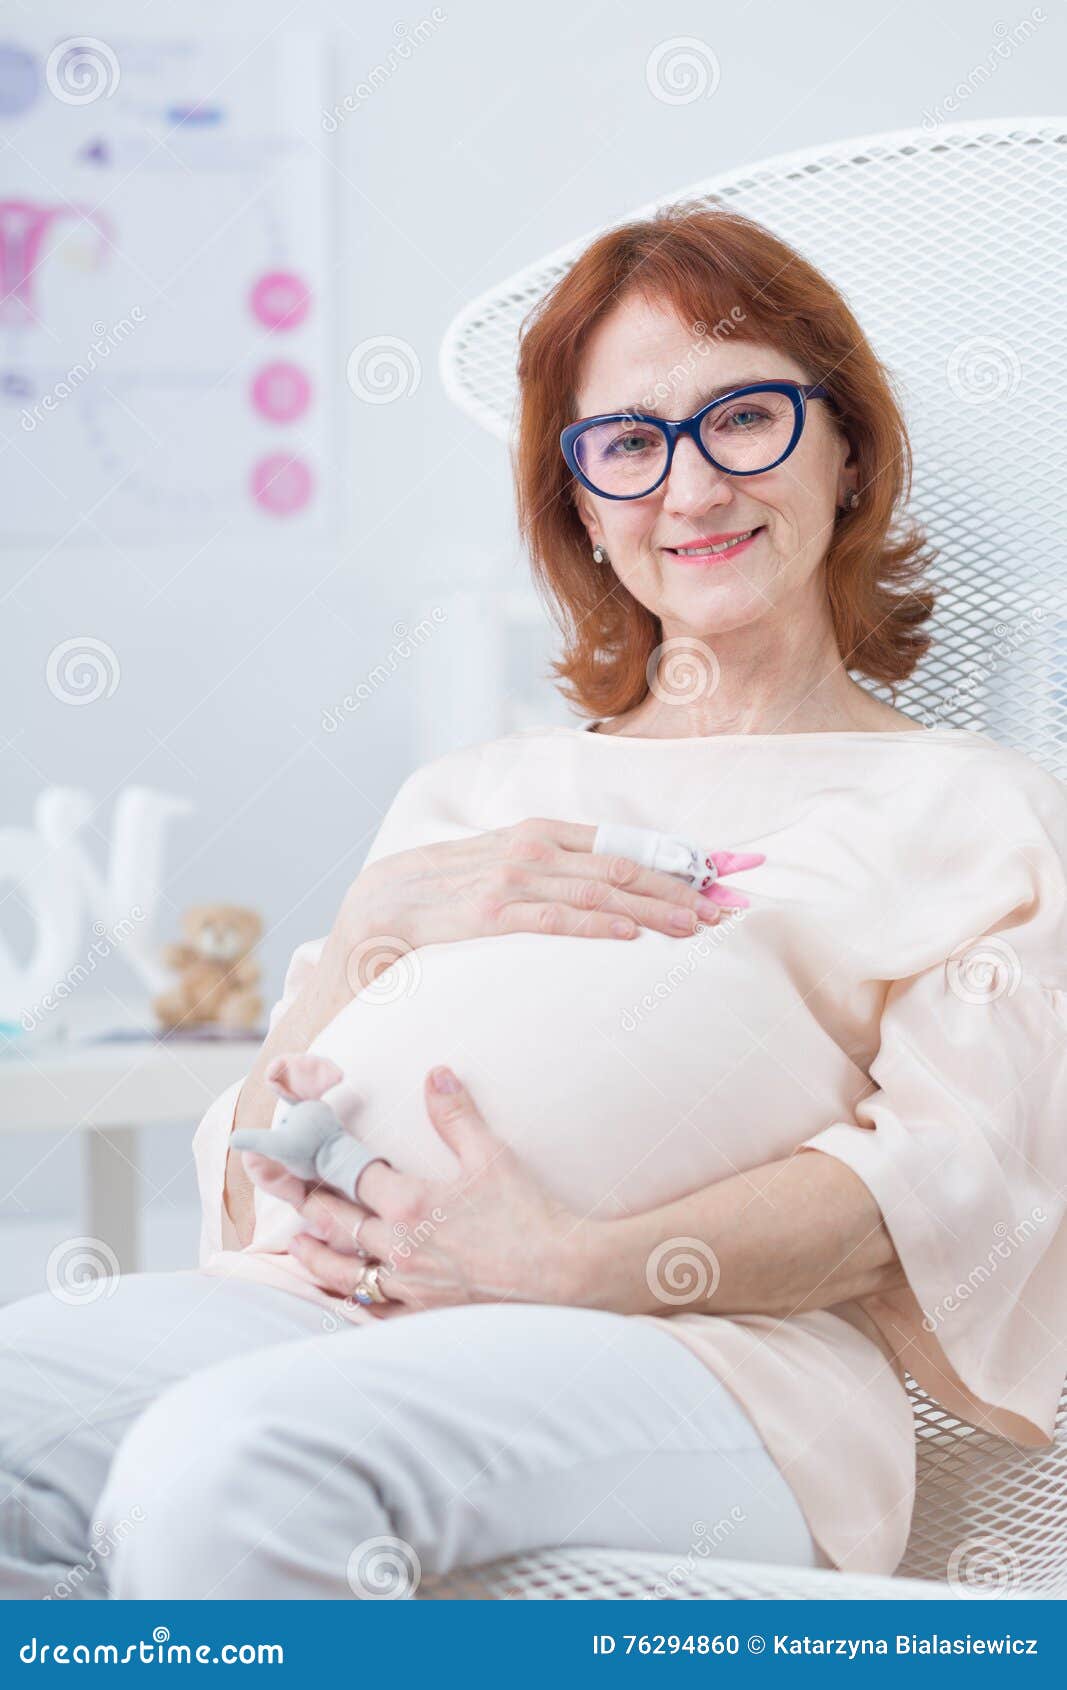 35节超强孕期指南，协和主任医师带你做有备而“孕”的健康妈妈 _米粒妈咪